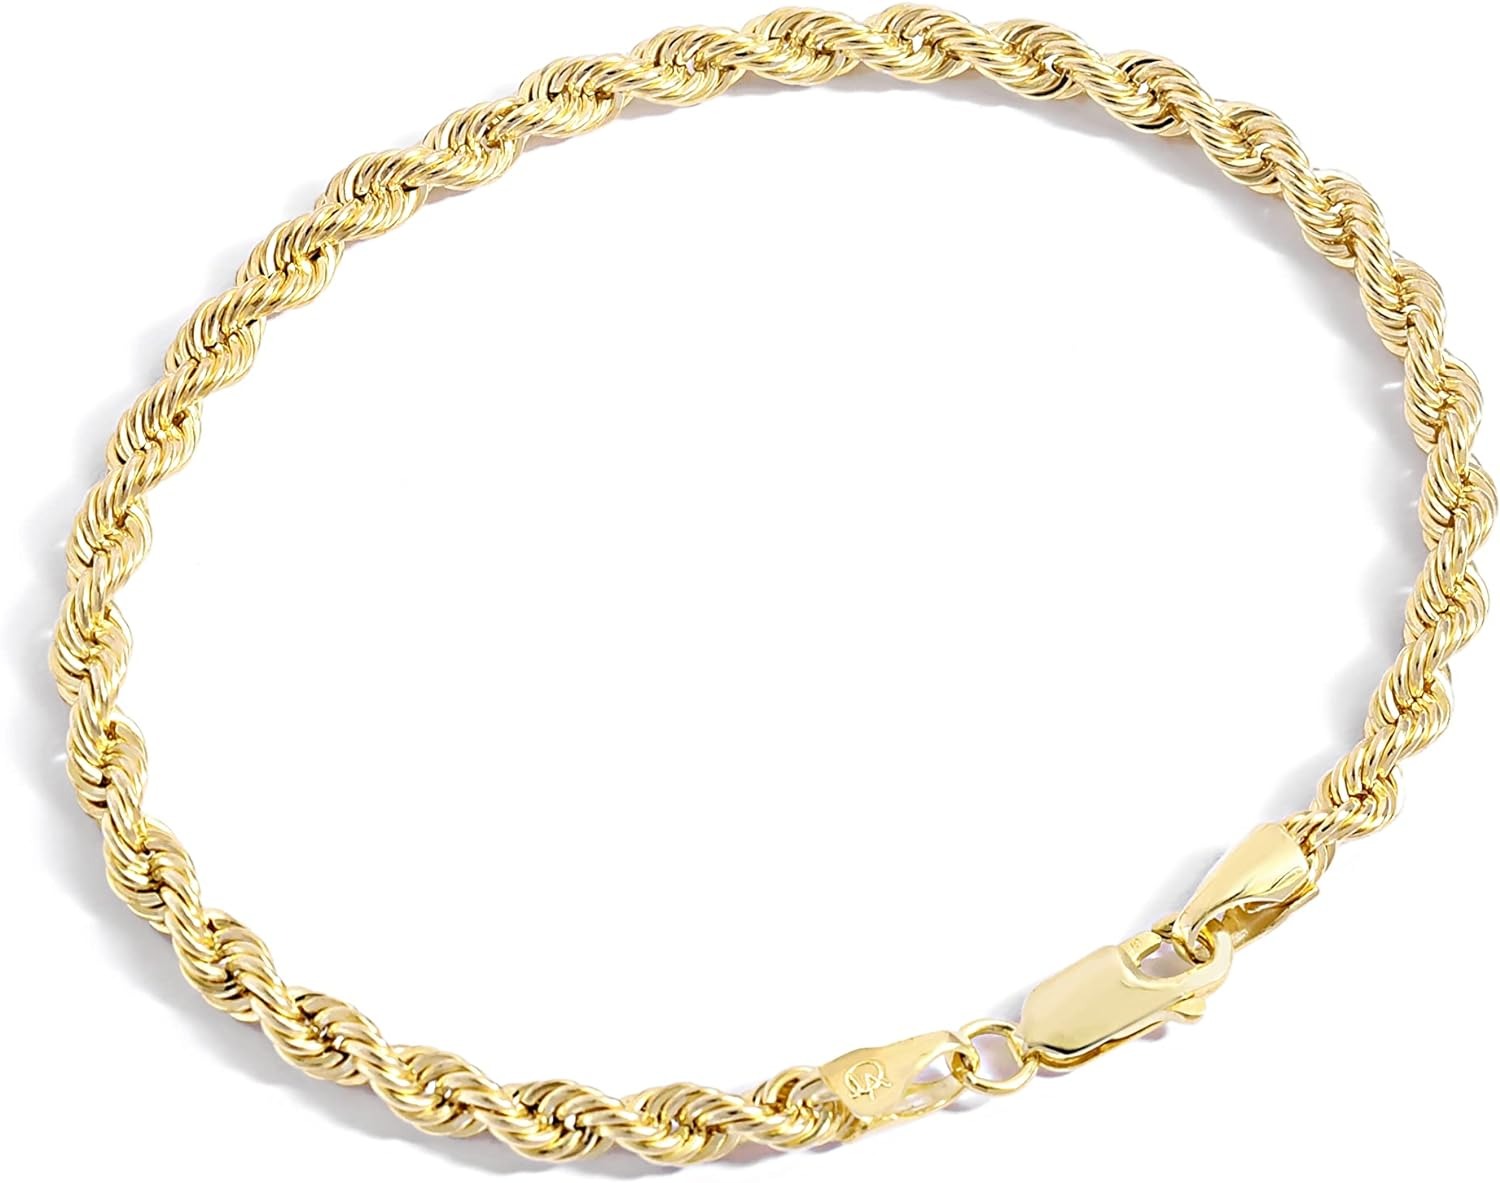 Koleksi Gelang Rantai Berisi Emas Atelier Perhiasan - Gelang Rantai Tali Berisi Emas Kuning Solid 14K untuk Wanita dan Pria dengan Ukuran Berbeda (2.7mm, 3.8mm)